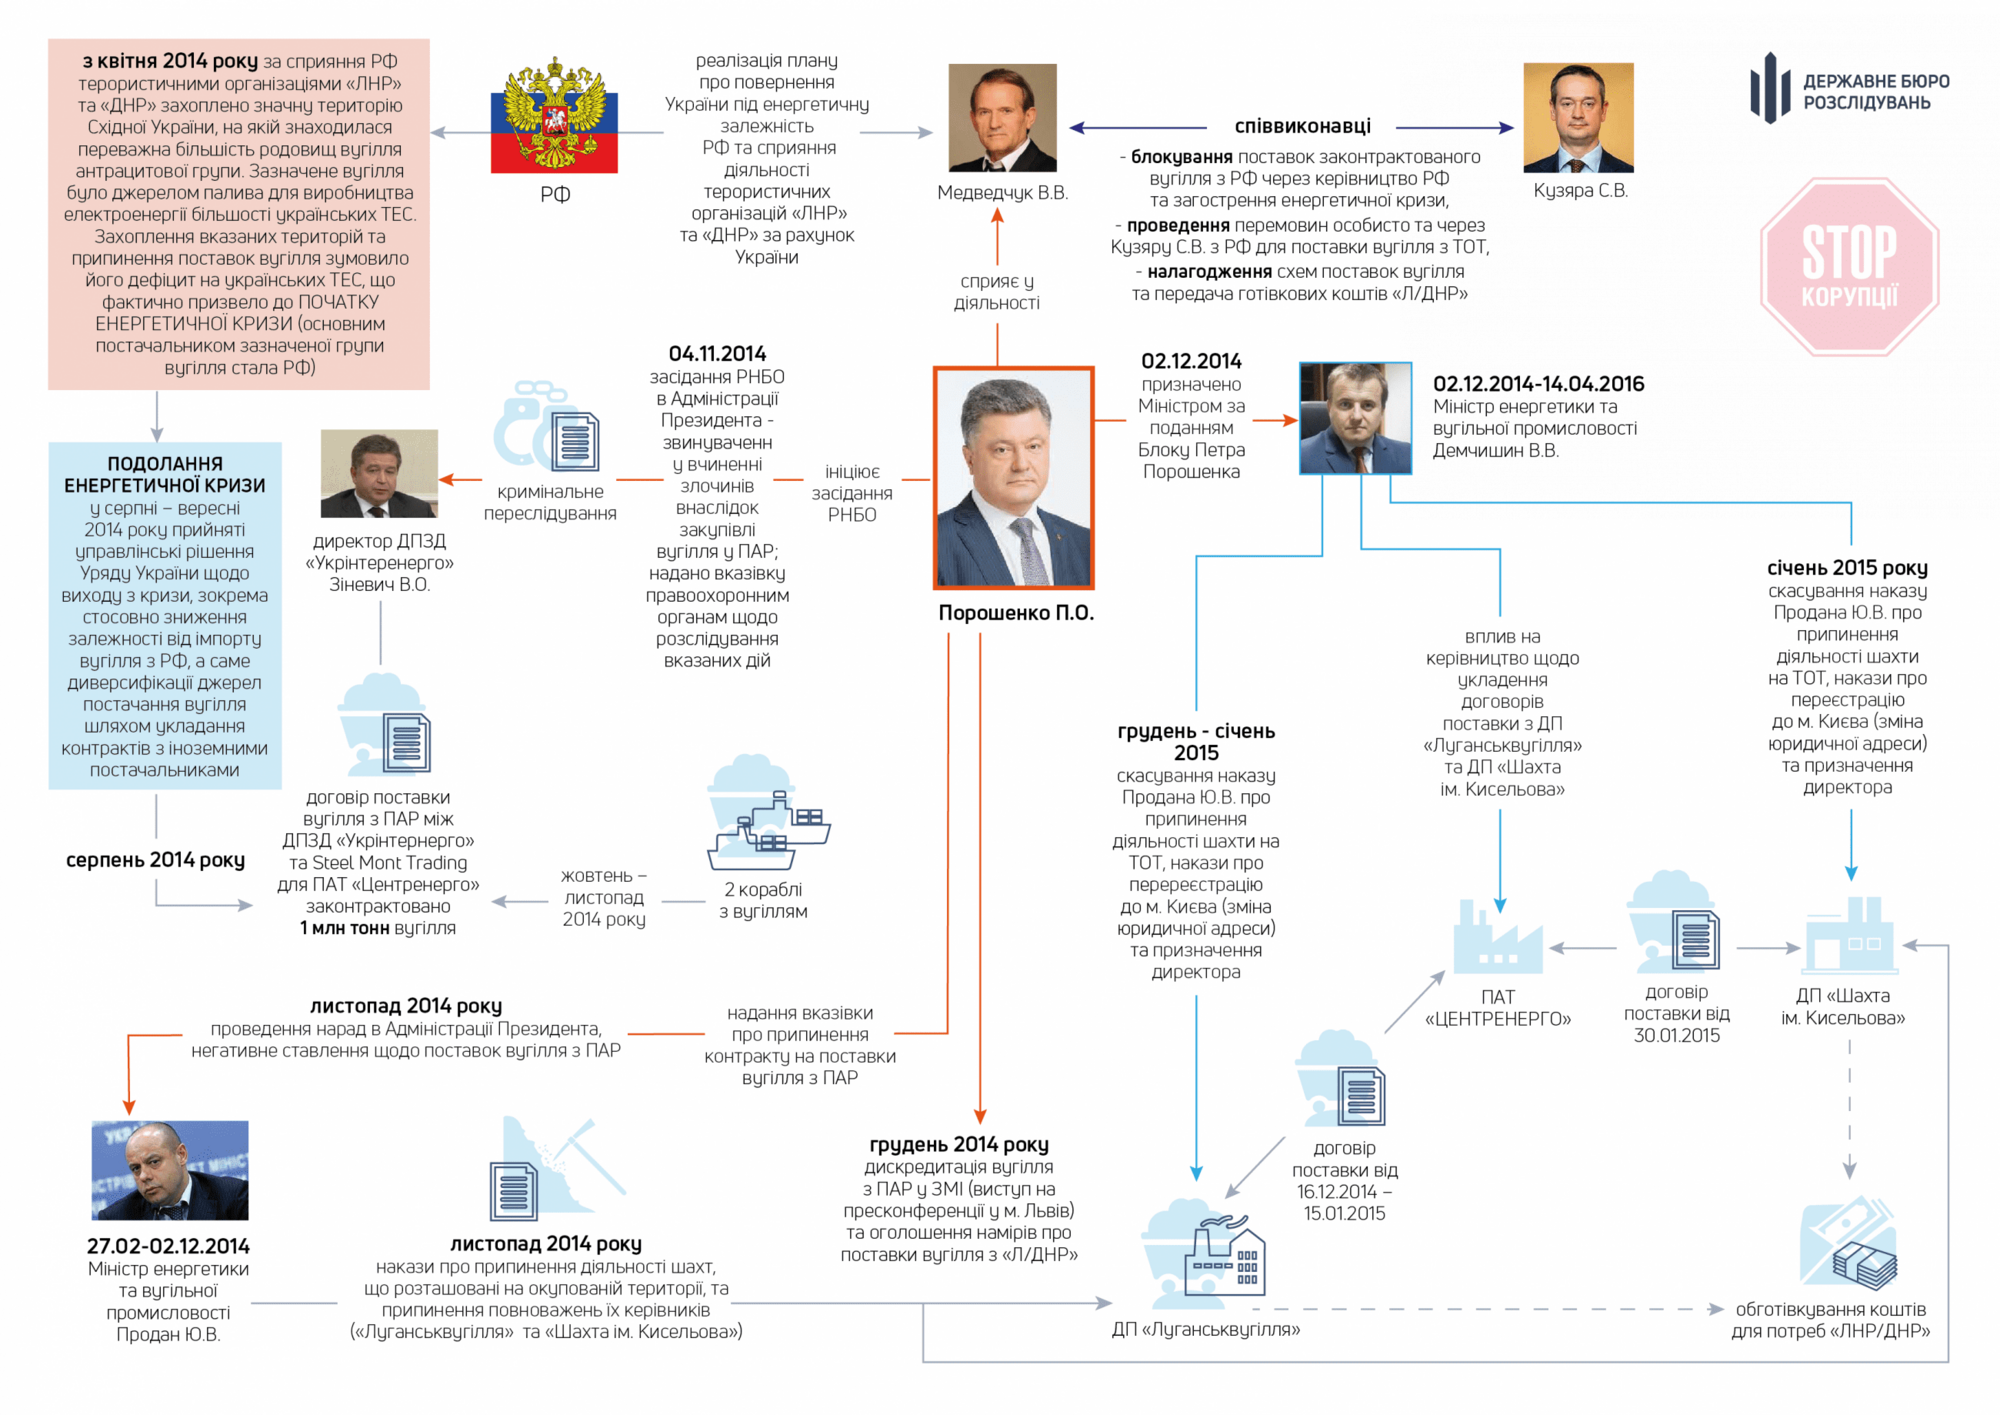  Схема ДБР ''вугільної справи'' Фото: dbr.gov.ua